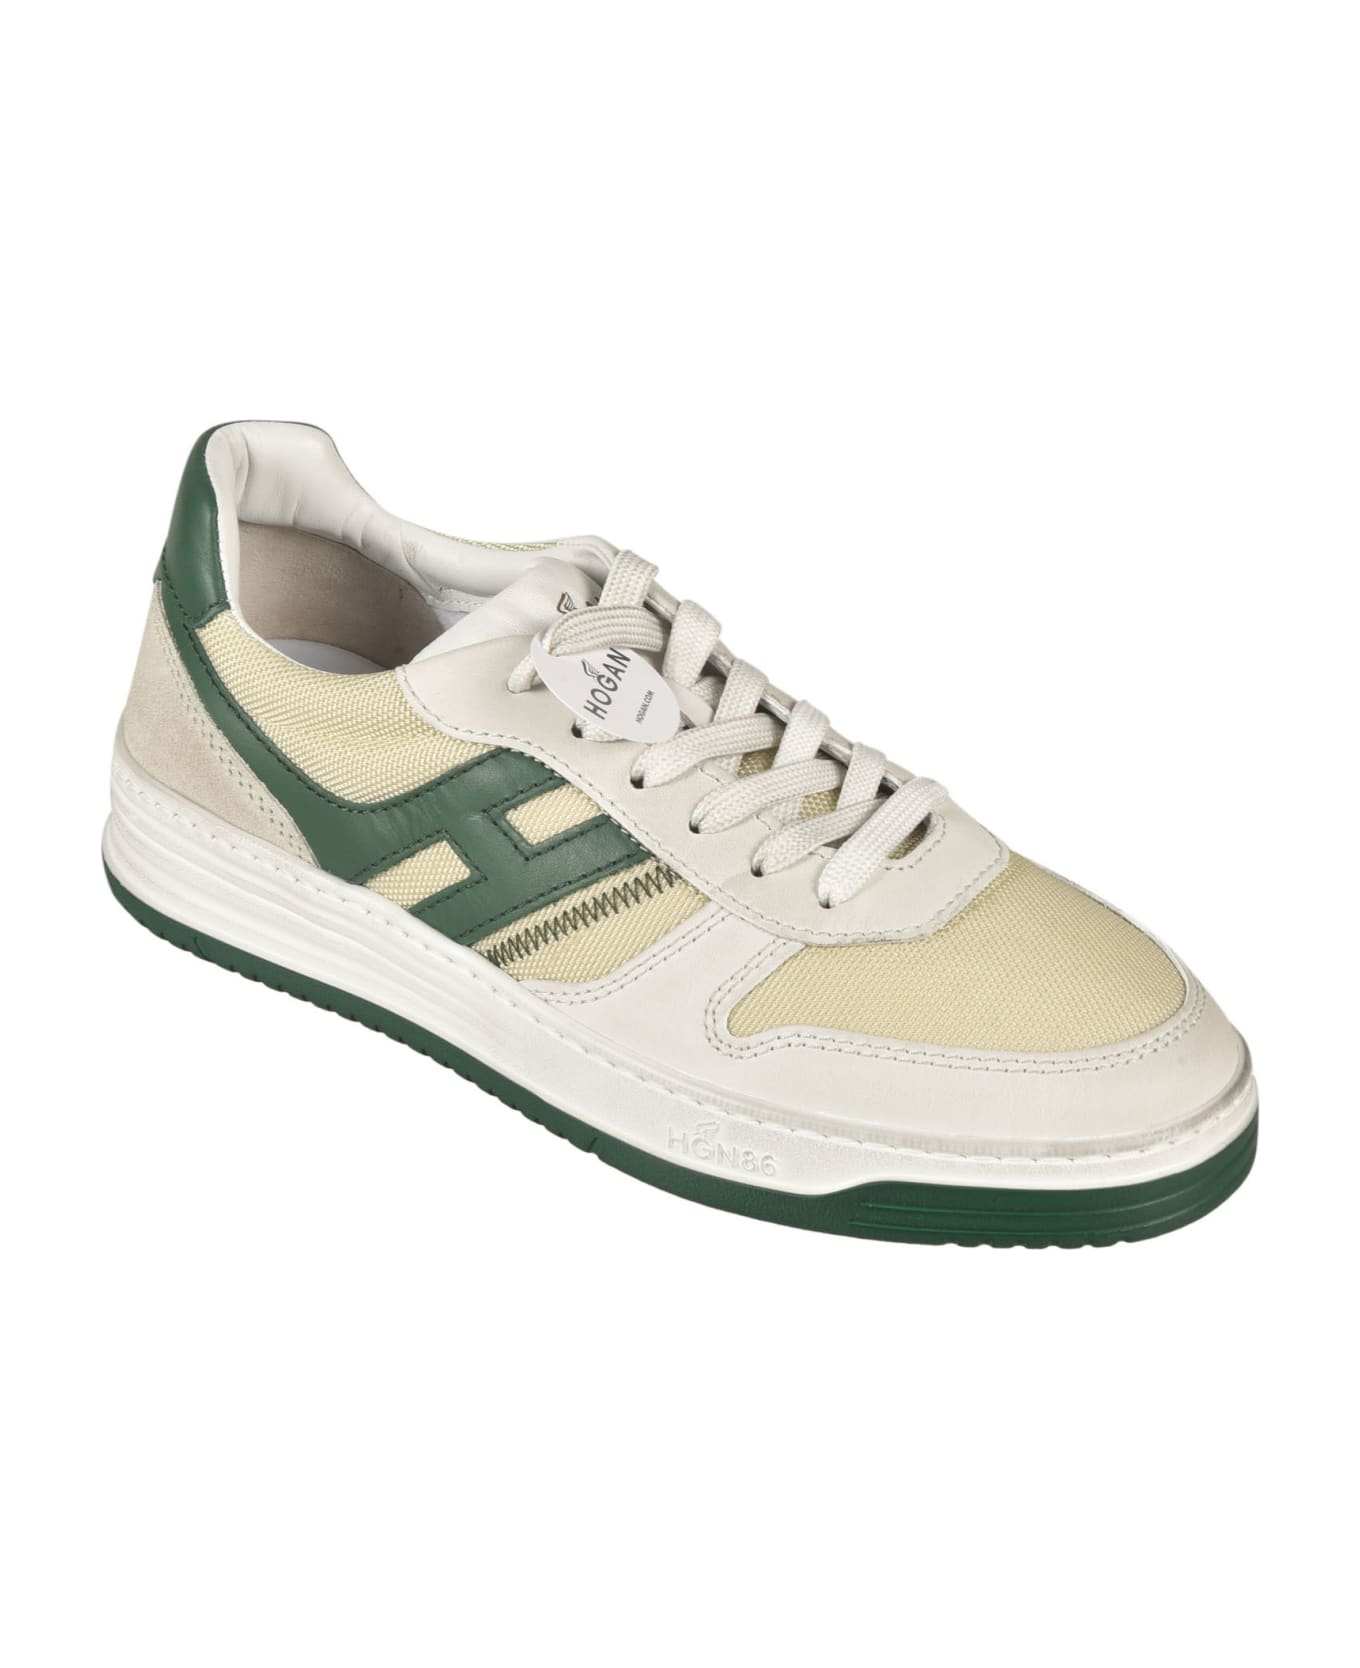 Hogan H630 Sneakers - Beige